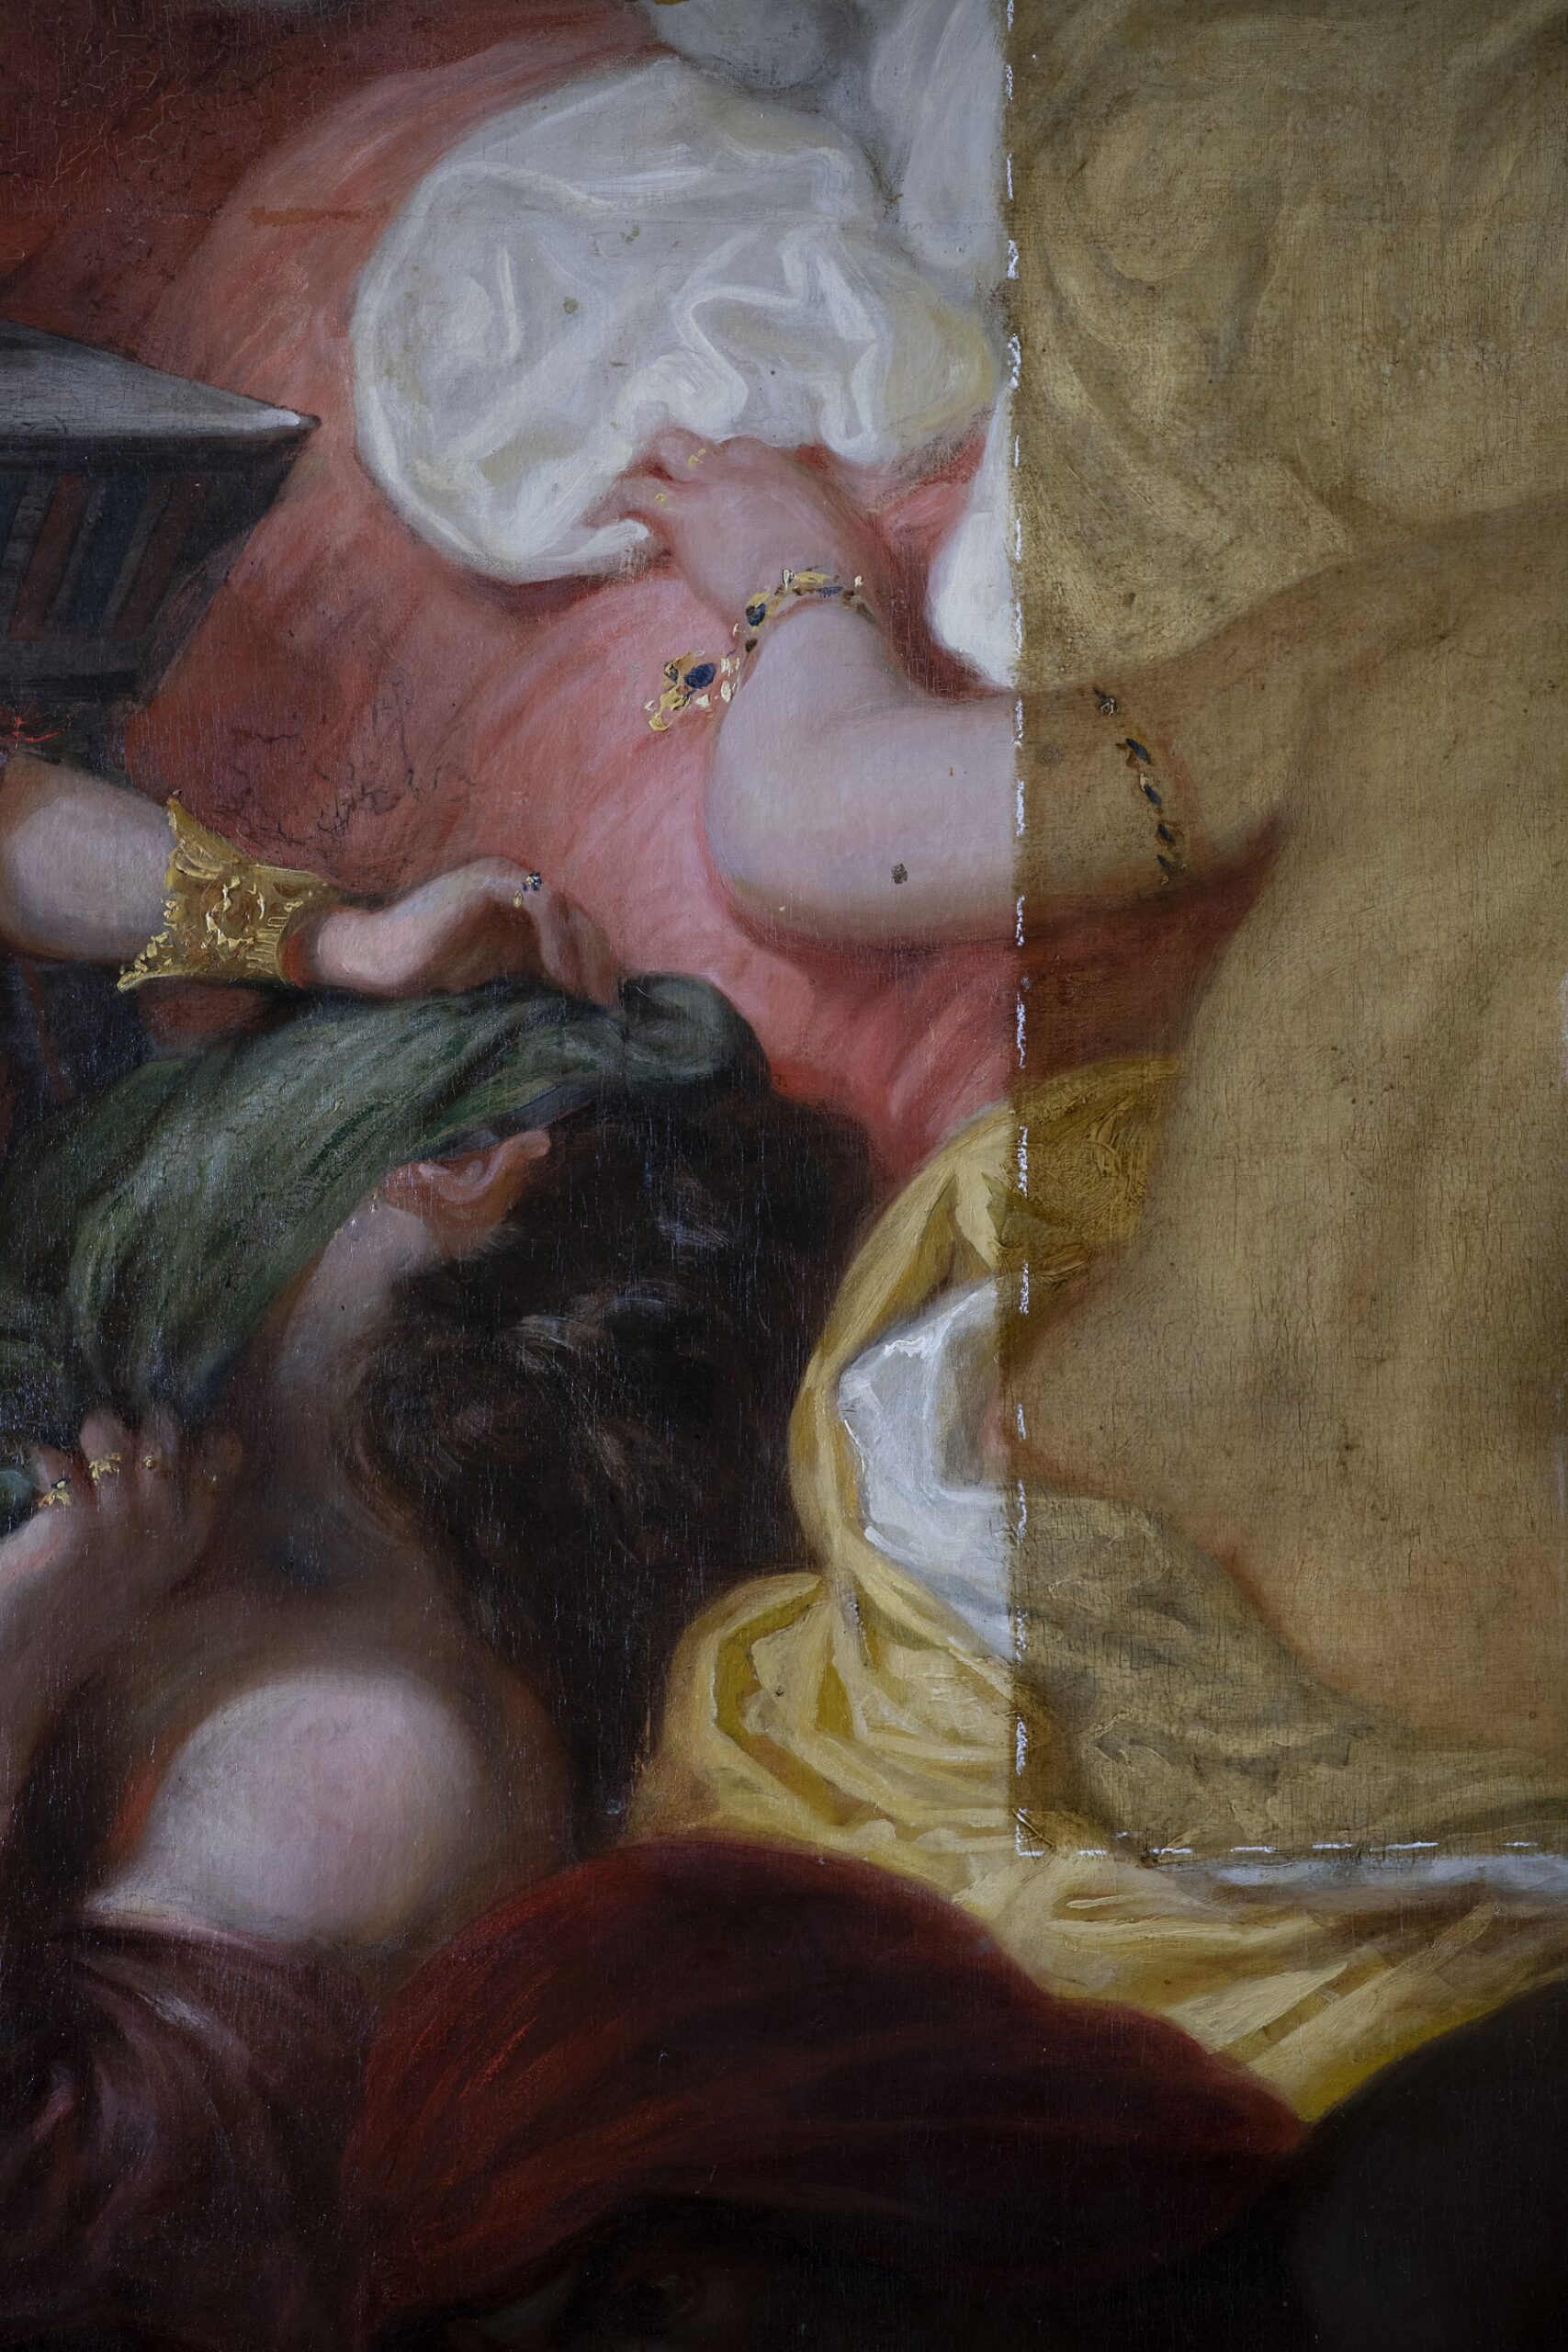 Eugène Delacroix (1798-1863), La Mort de Sardanapale (détail en cours de restauration, 15 novembre 2022), 1827. Huile sur toile, 392 x 496 cm. Paris, département des Peintures du musée du Louvre. © Arcanes